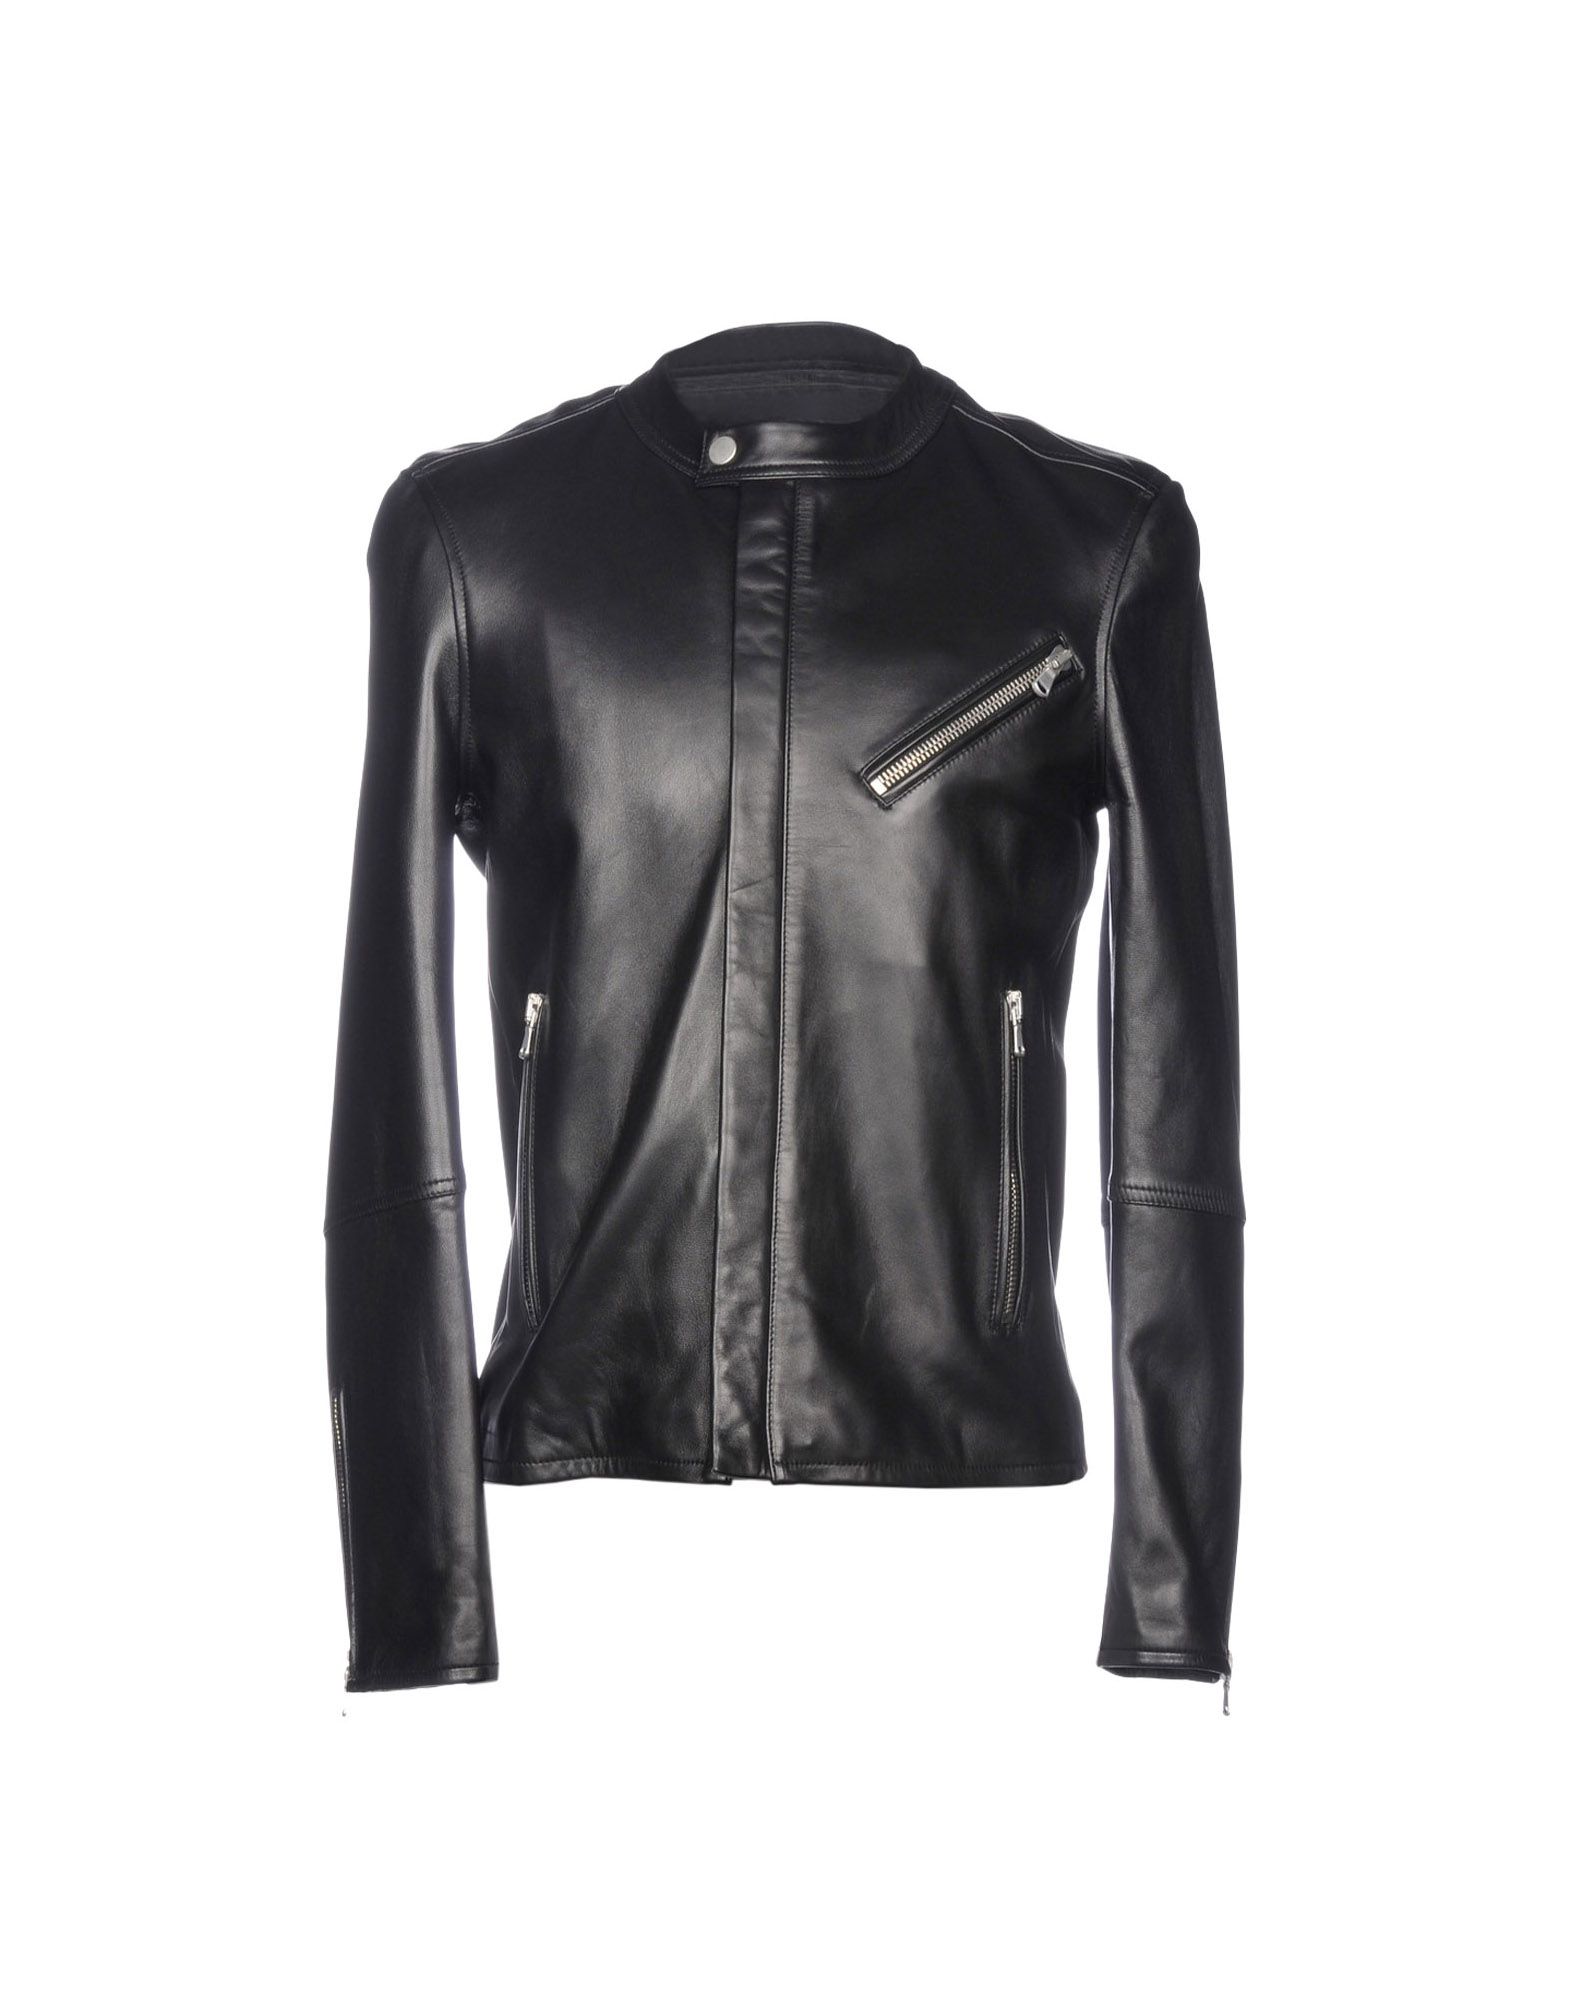 DIESEL BLACK GOLD Biker jacket,41819420MG 3